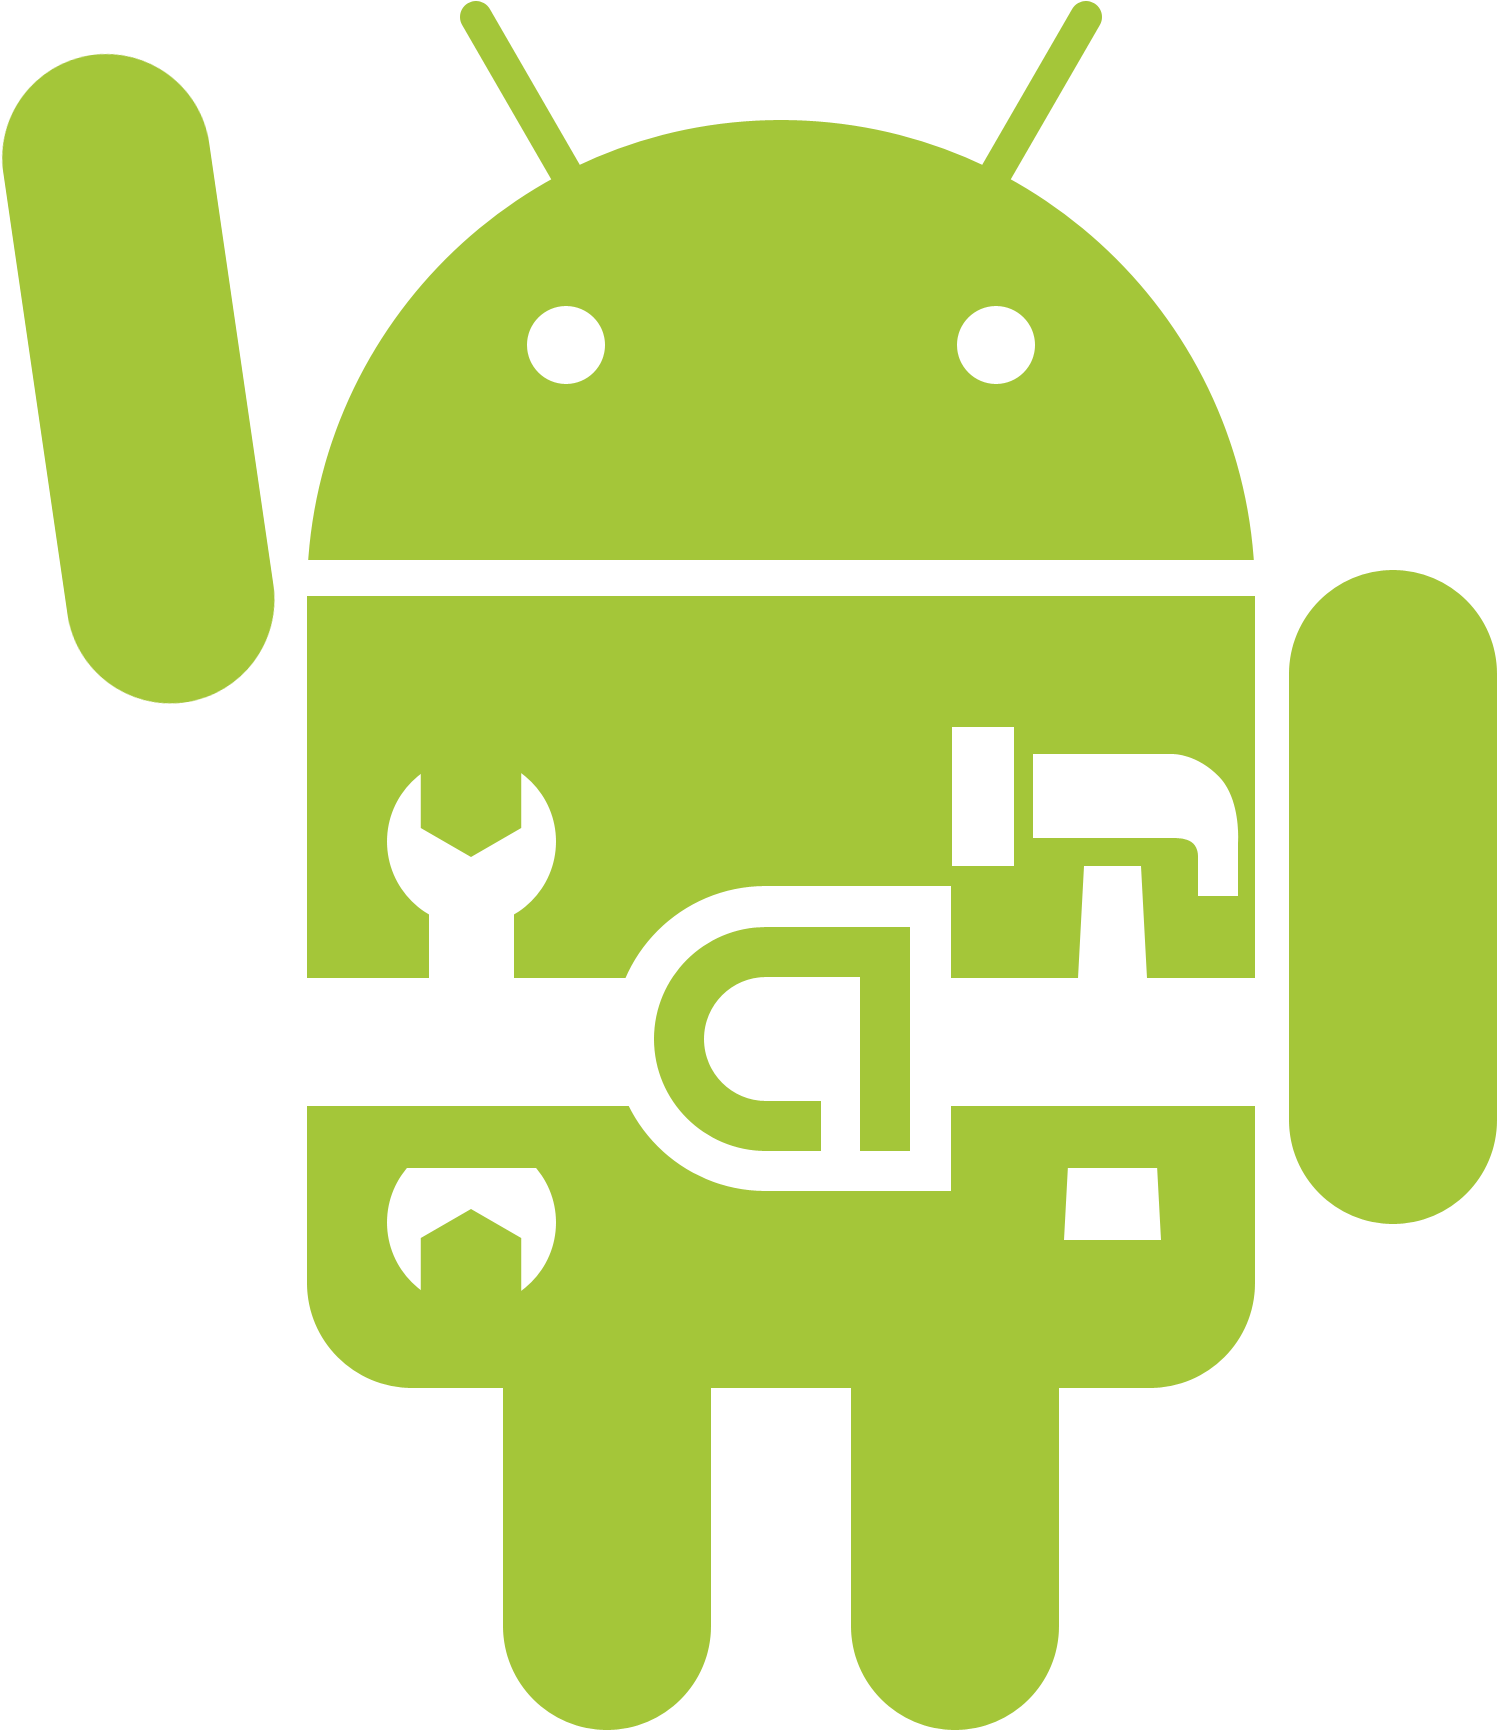 Эмблема андроид. Иконка Android. Андроид без фона. Значок Android без фона. Android года выпуска